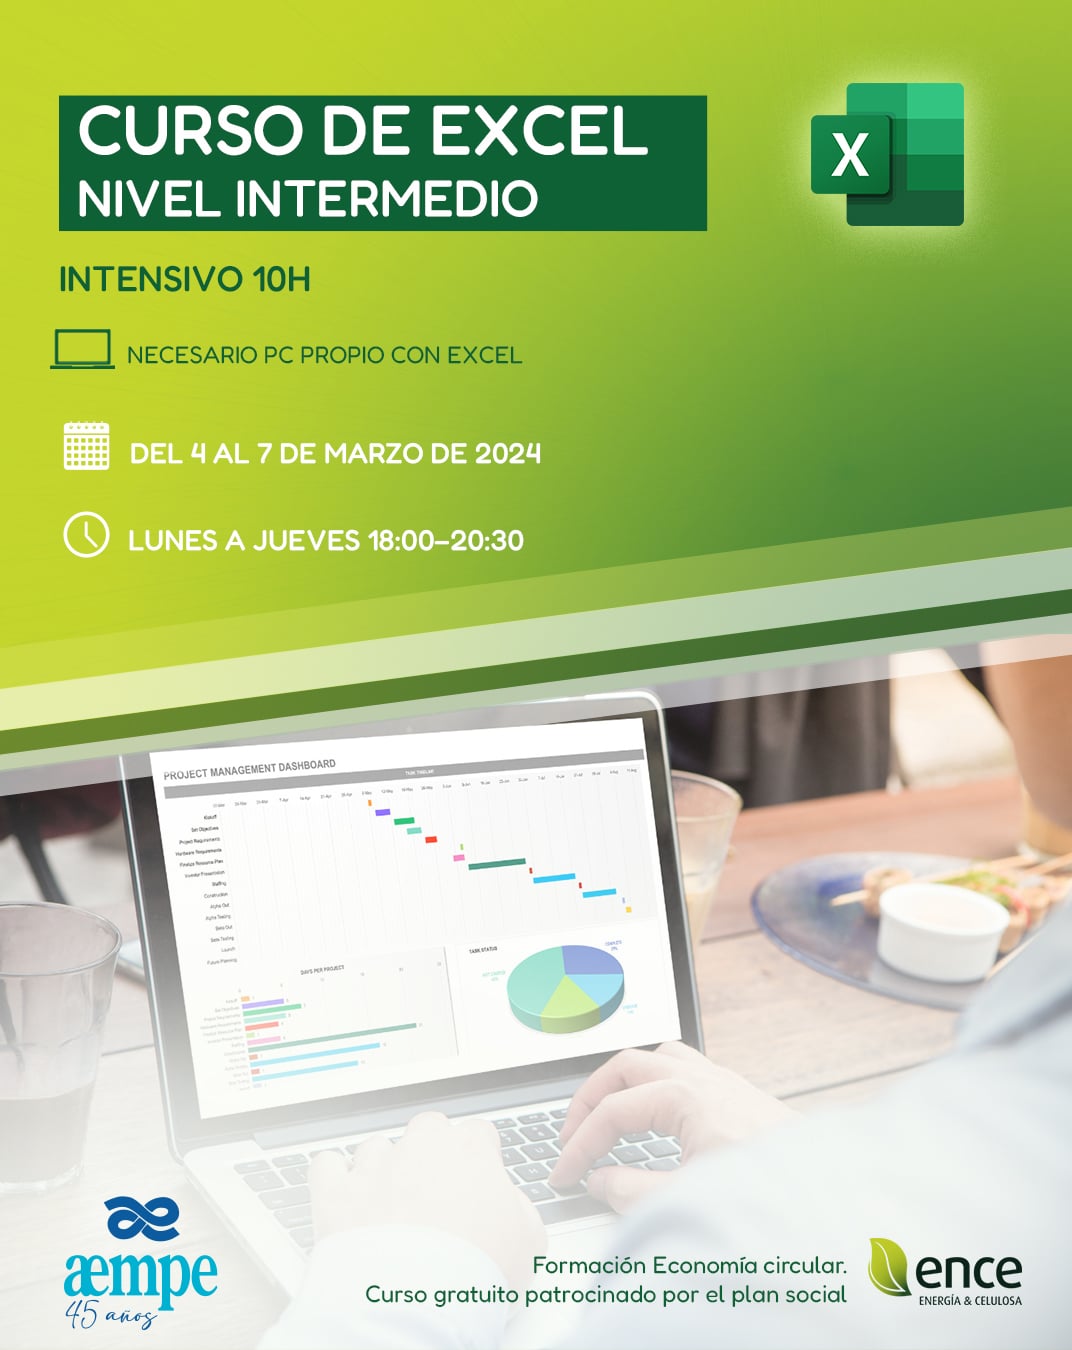 Cartel del curso de Excel de nivel intermedio que muestra una persona trabajando con Excel en un ordenador